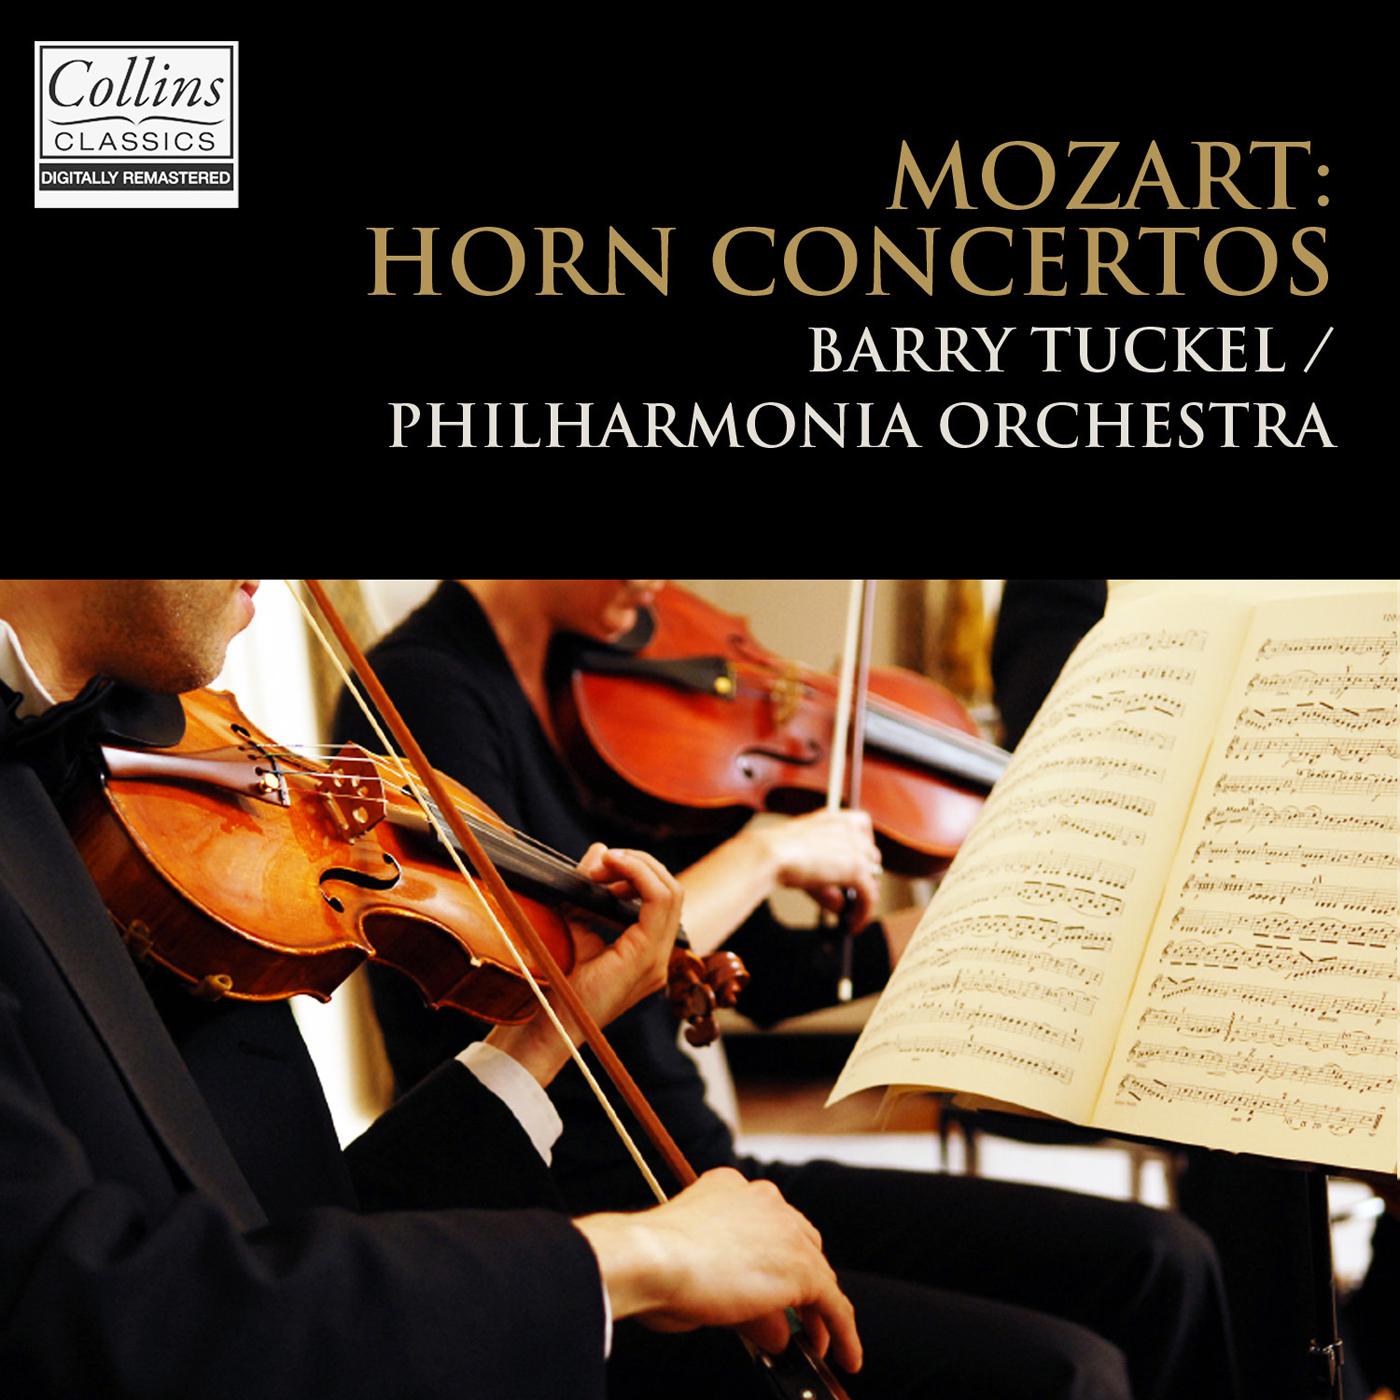 Horn Concerto No. 2 in E-Flat Major, K. 417: III. Rondo